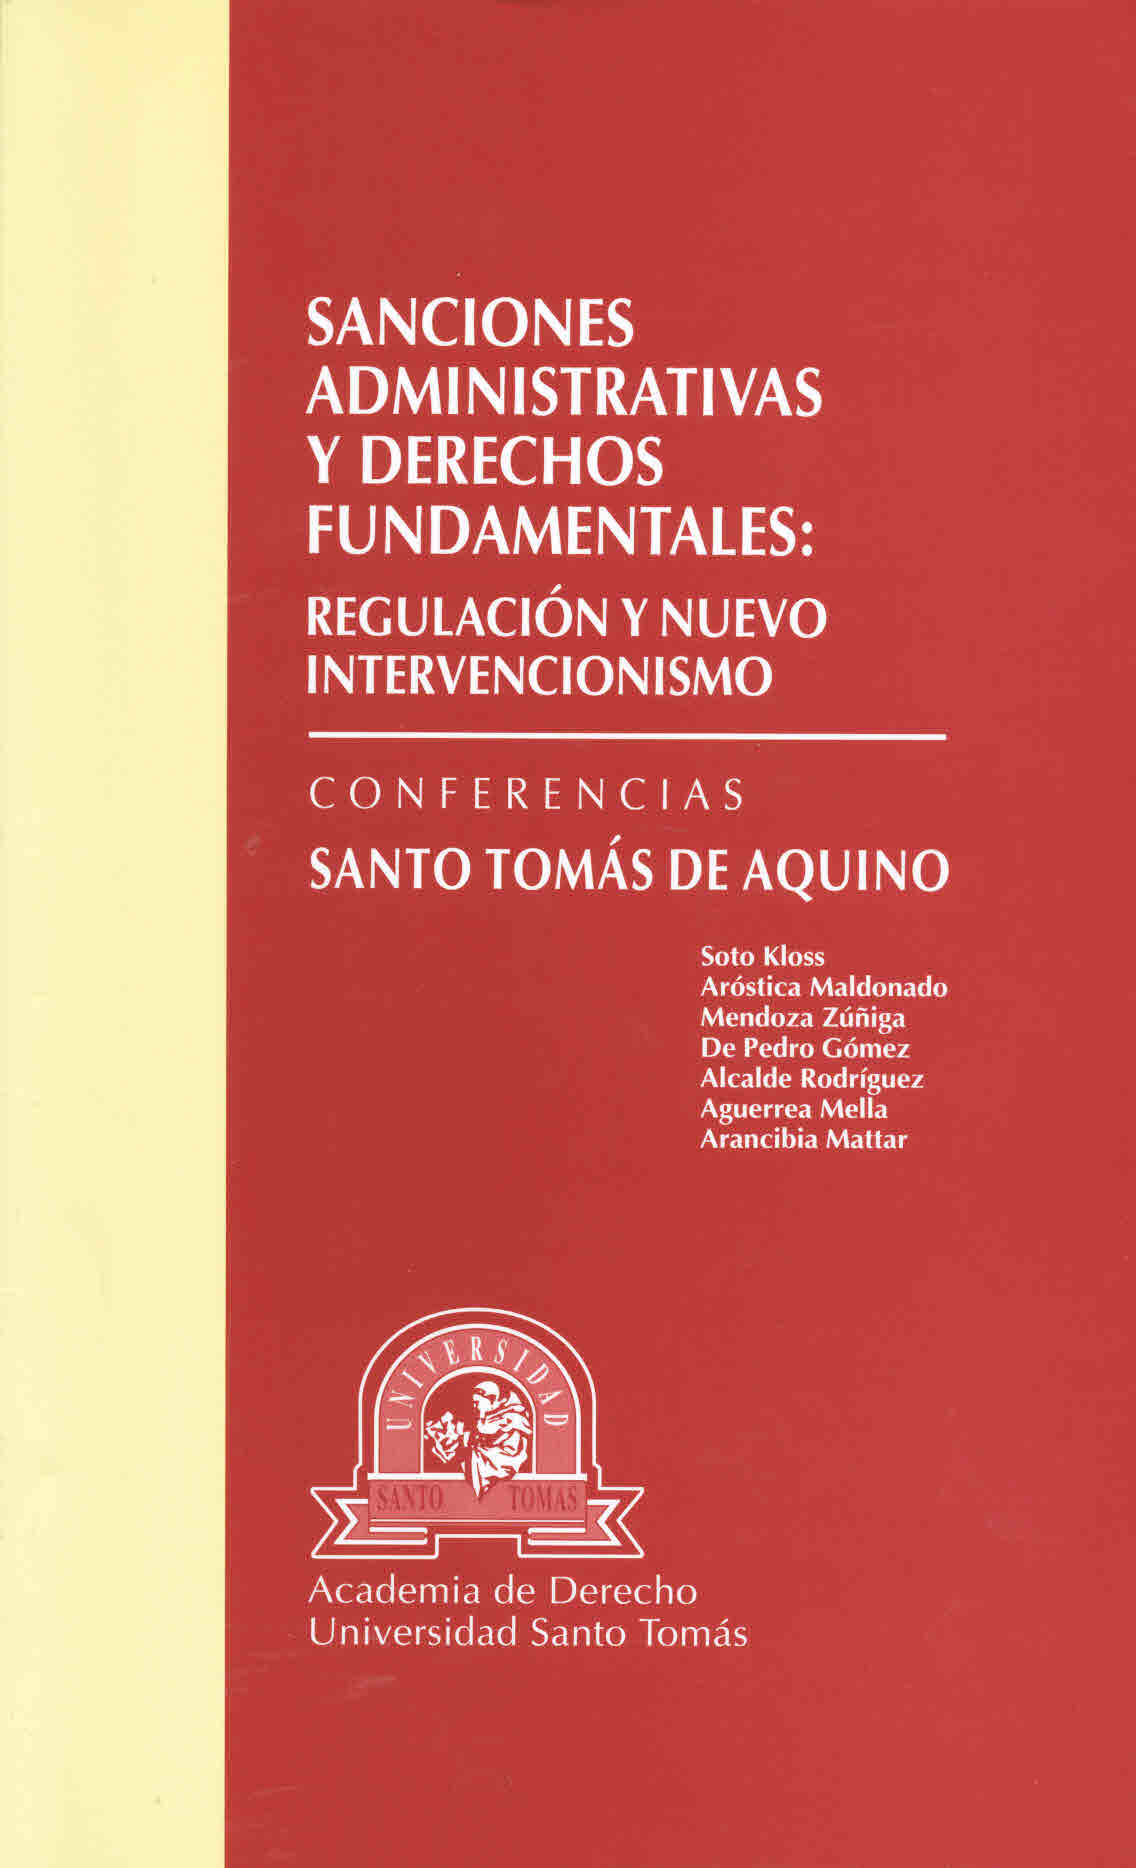 Sanciones administrativas y derechos fundamentales: regulación y nuevo intervencionismo. Conferencias Santo Tomás de Aquino